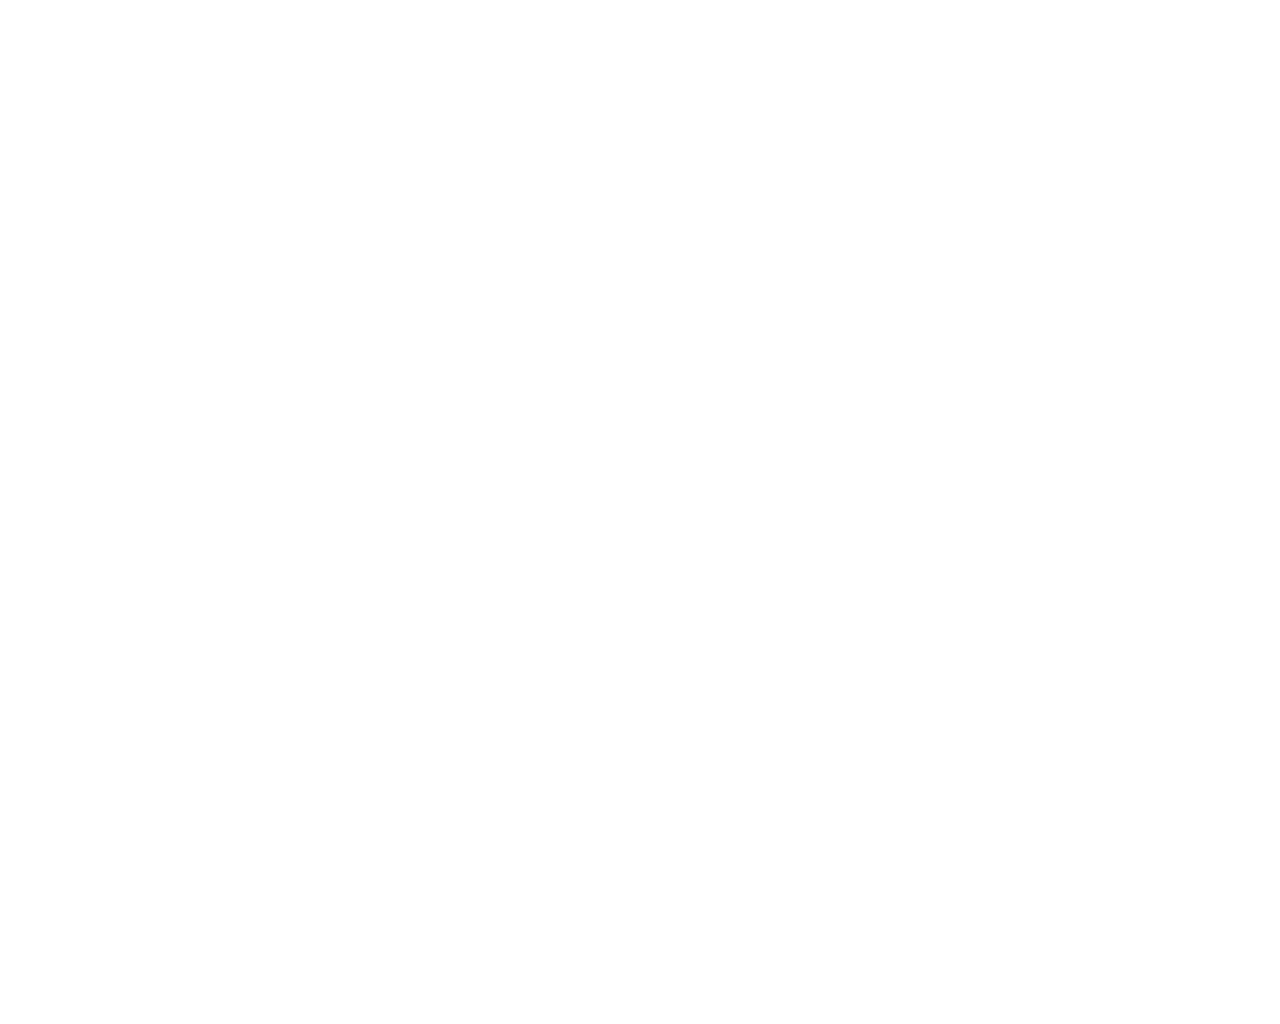 Kareracter